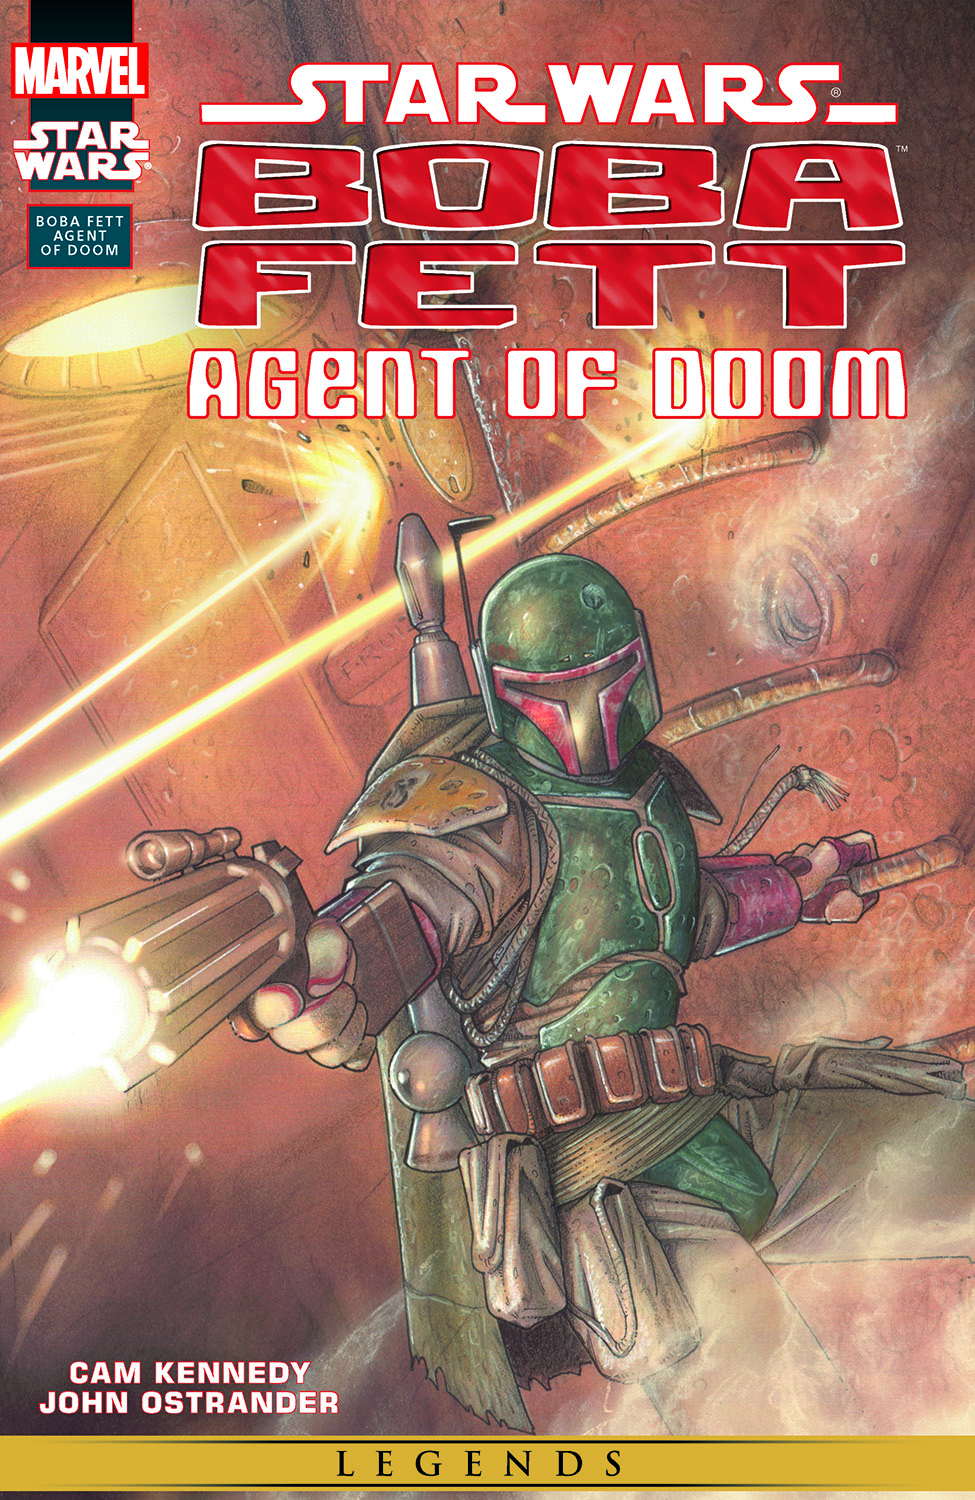 Star Wars: Boba Fett - Agent of Doom (2000) #1